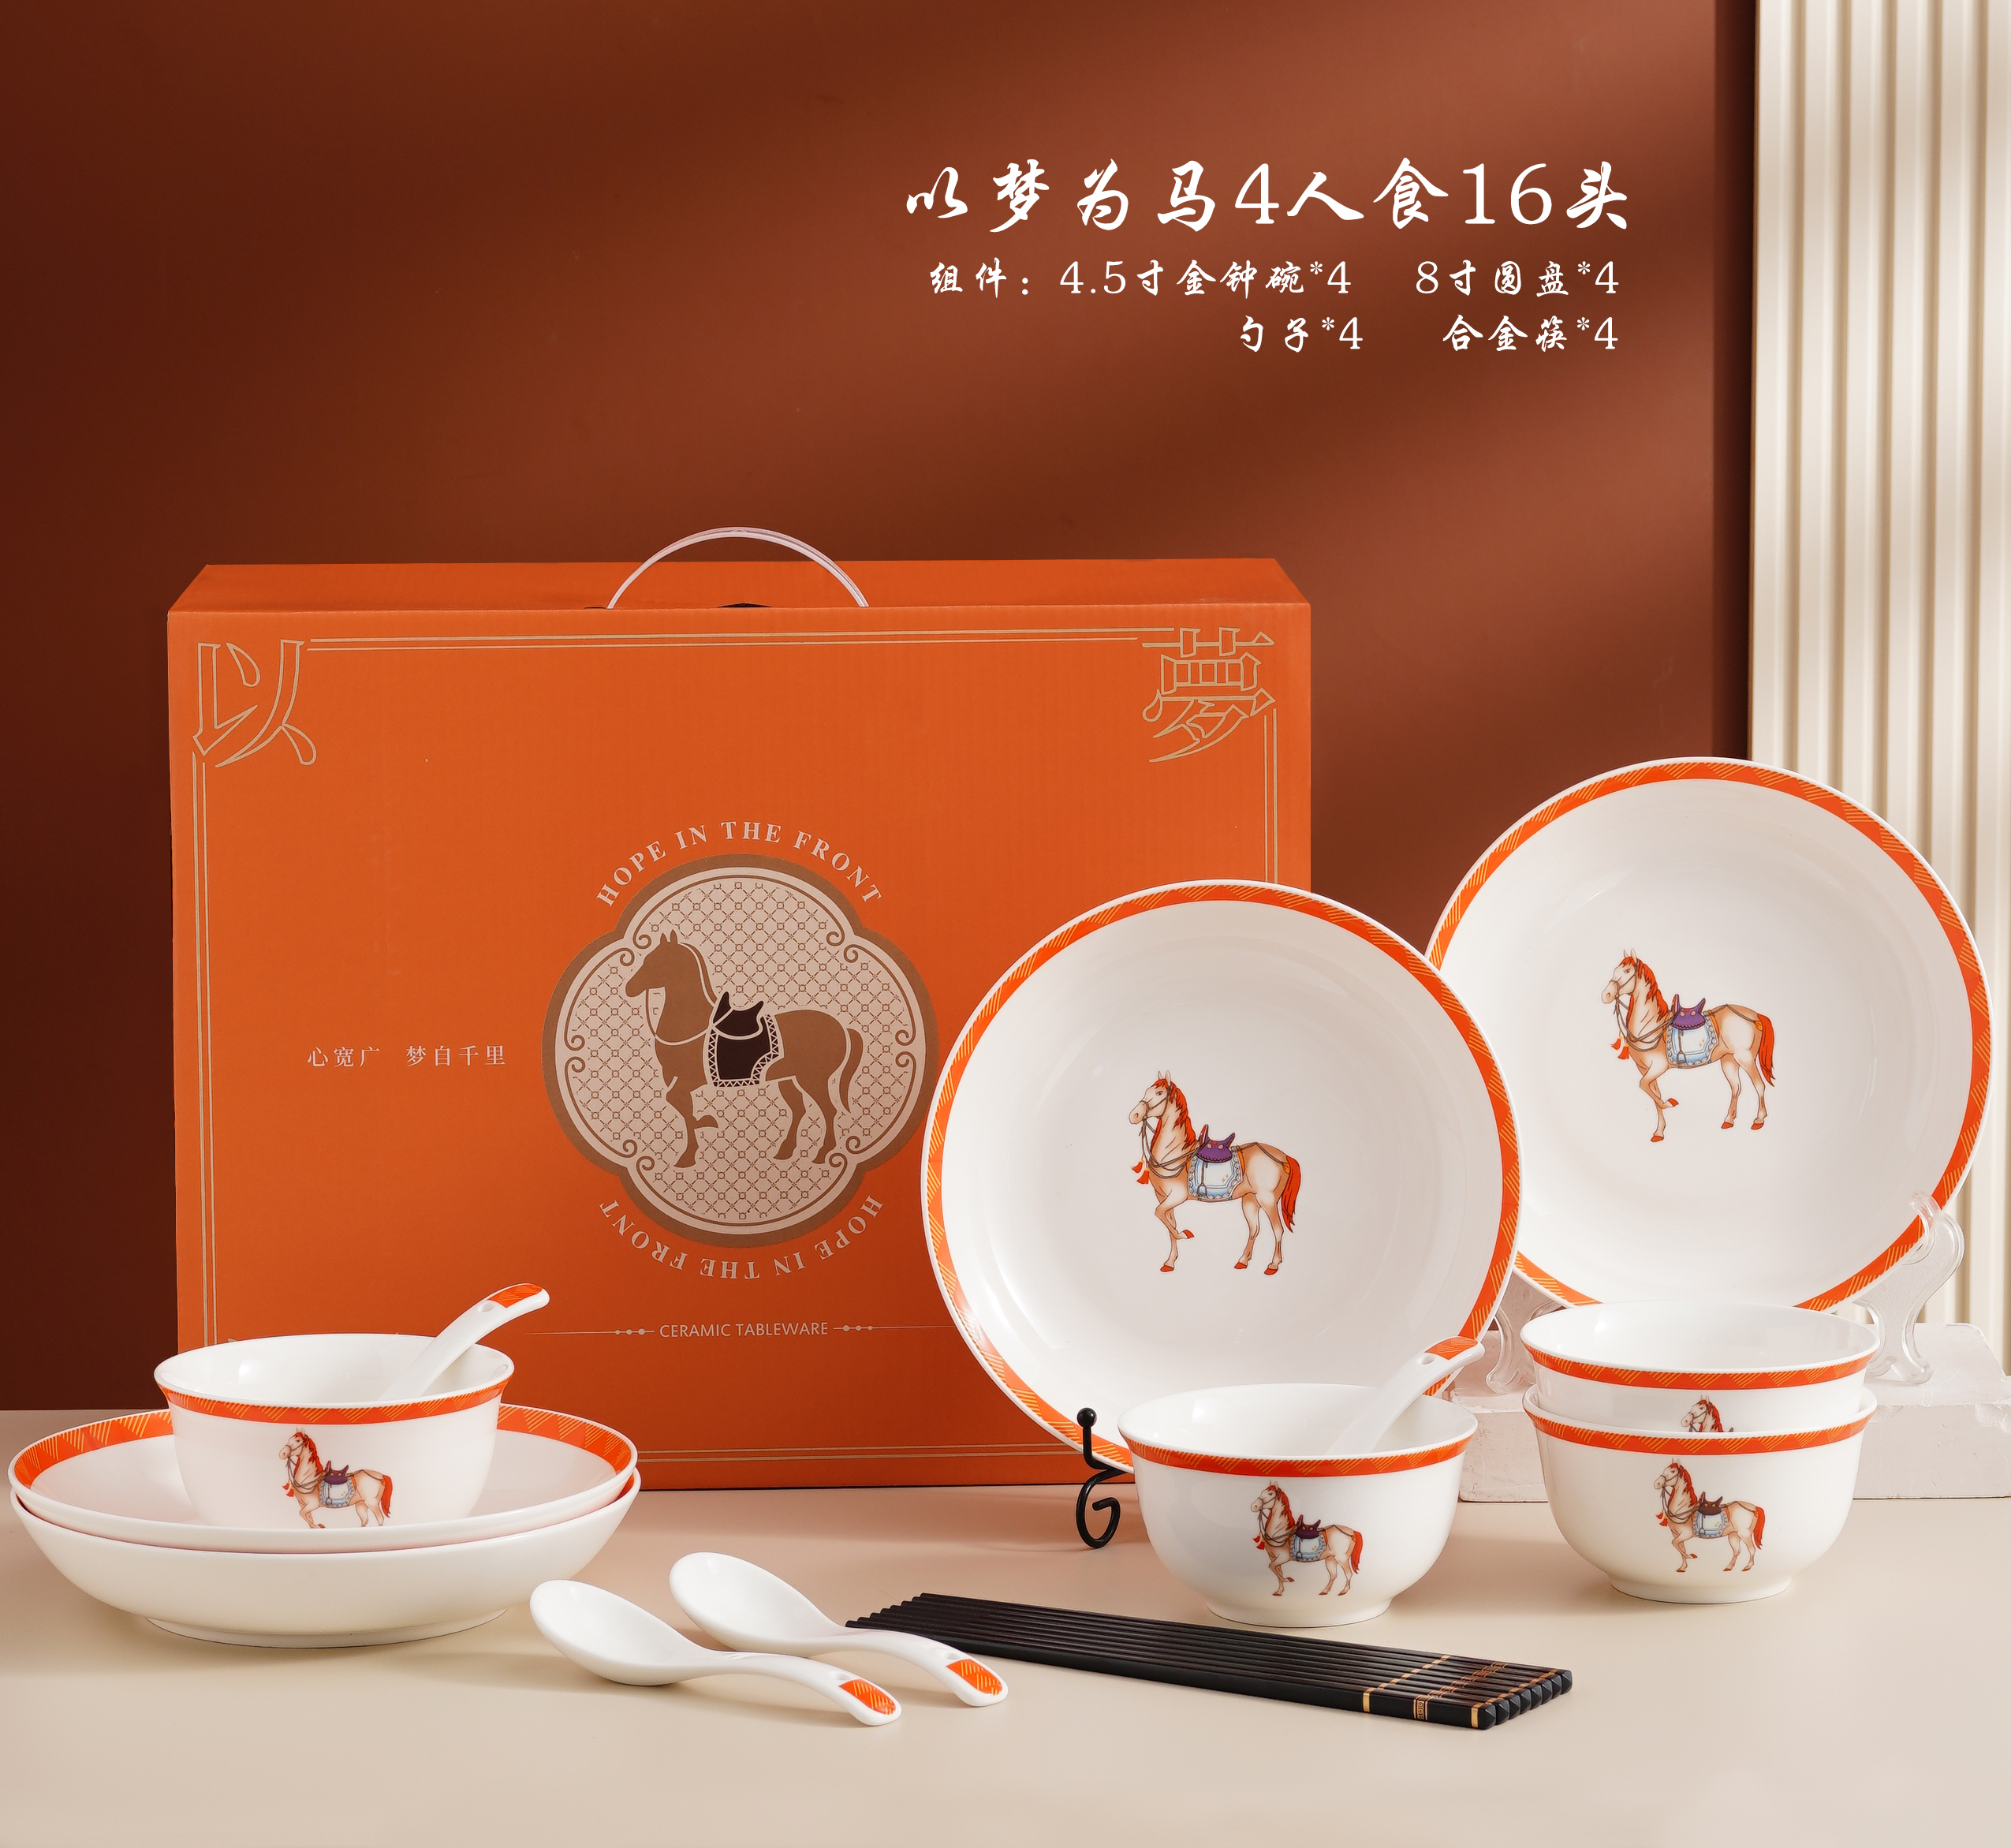 餐具礼品碗日式餐具陶瓷碗景德镇陶瓷餐具礼品套装日式碗盘ceramics